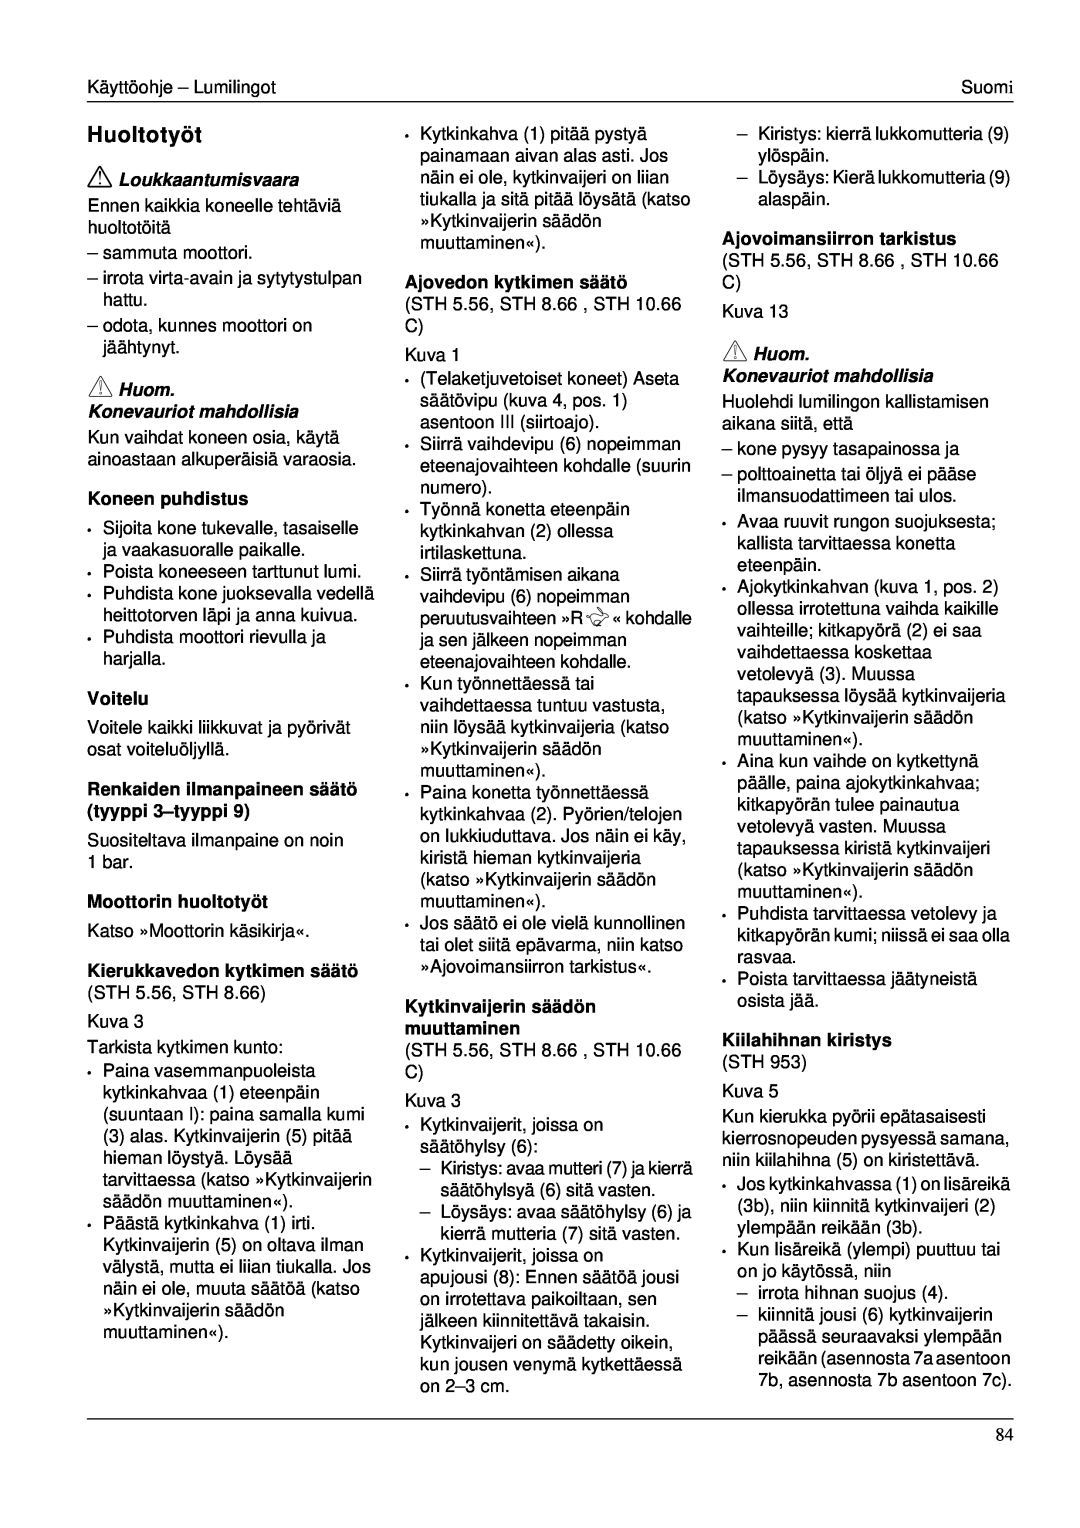 Karcher STH 953 manual Huoltotyöt, Loukkaantumisvaara, Huom Konevauriot mahdollisia, Koneen puhdistus, Voitelu 